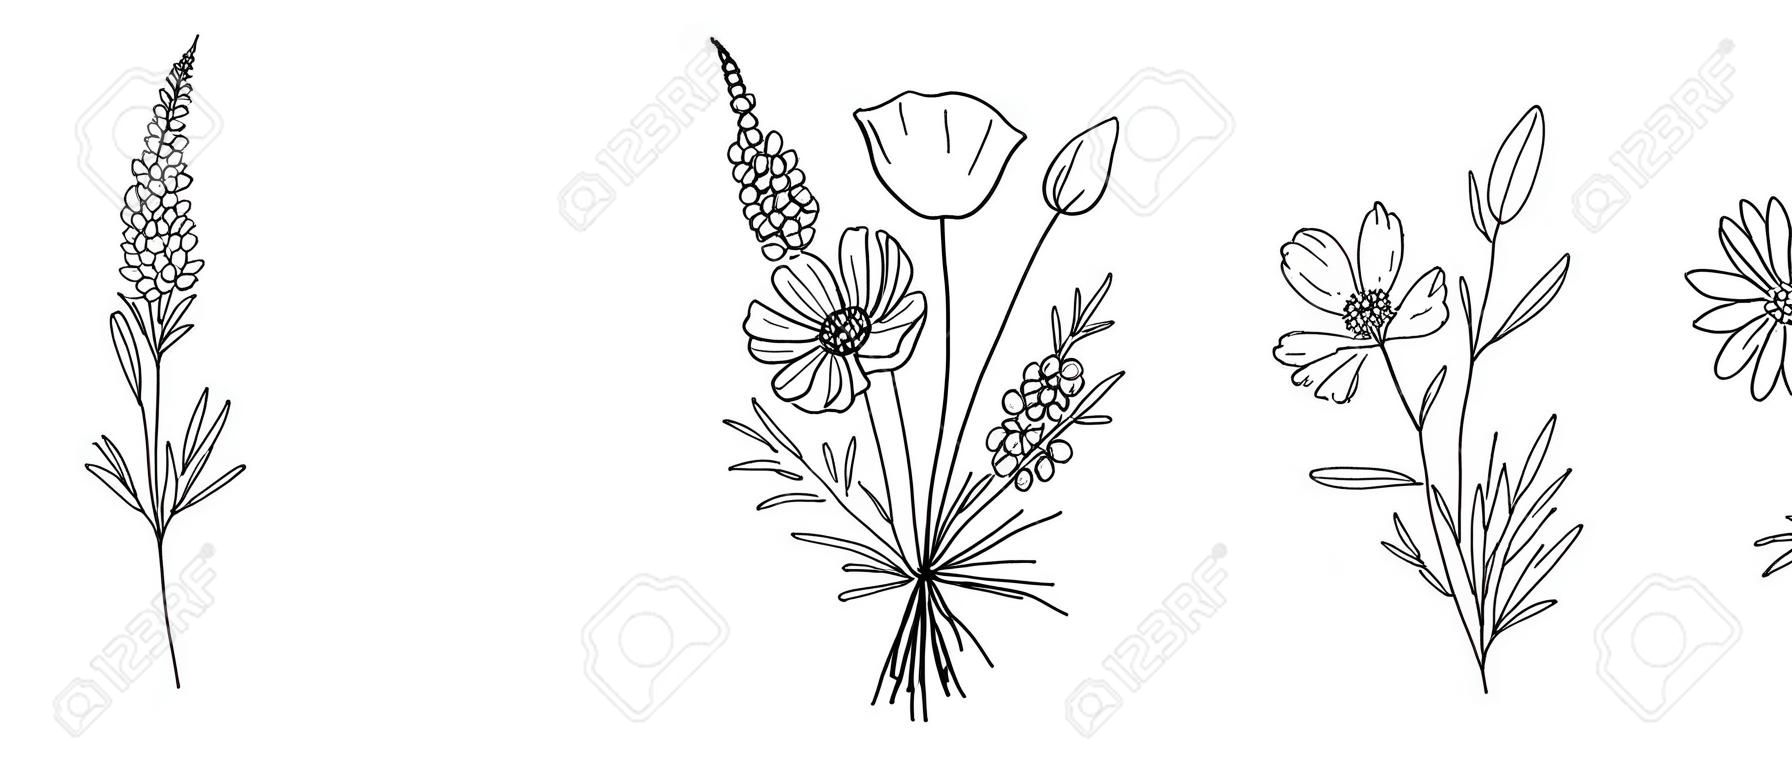 Ensemble de bouquets d'art en ligne de fleurs sauvages. Fleurs de prairie, herbes, plantes sauvages, éléments botaniques dessinés à la main pour des projets de conception. Illustration vectorielle.